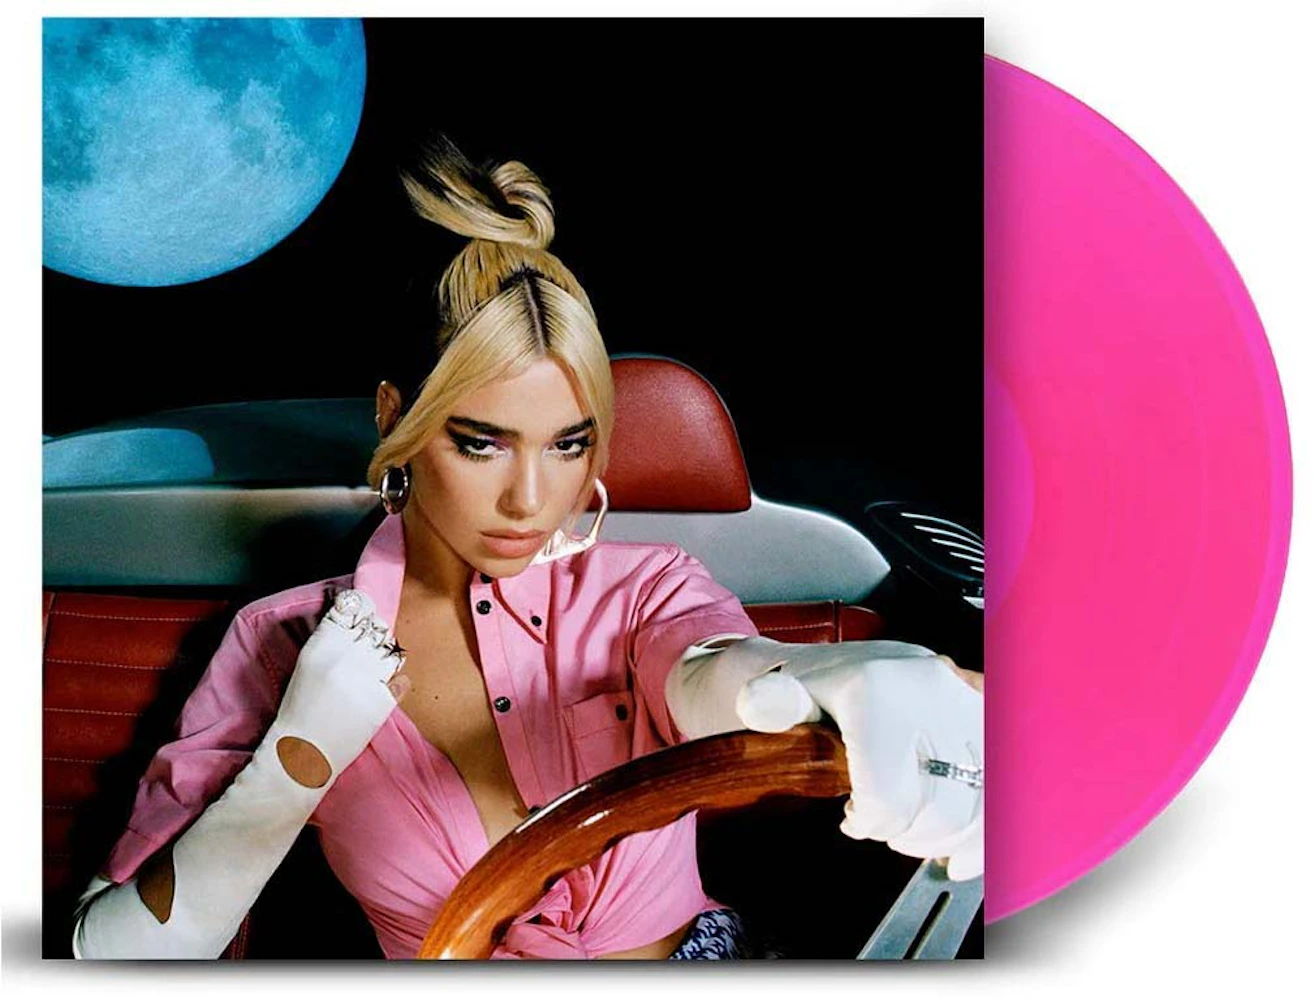 El Show de los Discos, E02: Future Nostalgia de Dua Lipa en vinilo  (edición rosa trasparente) - La Rata